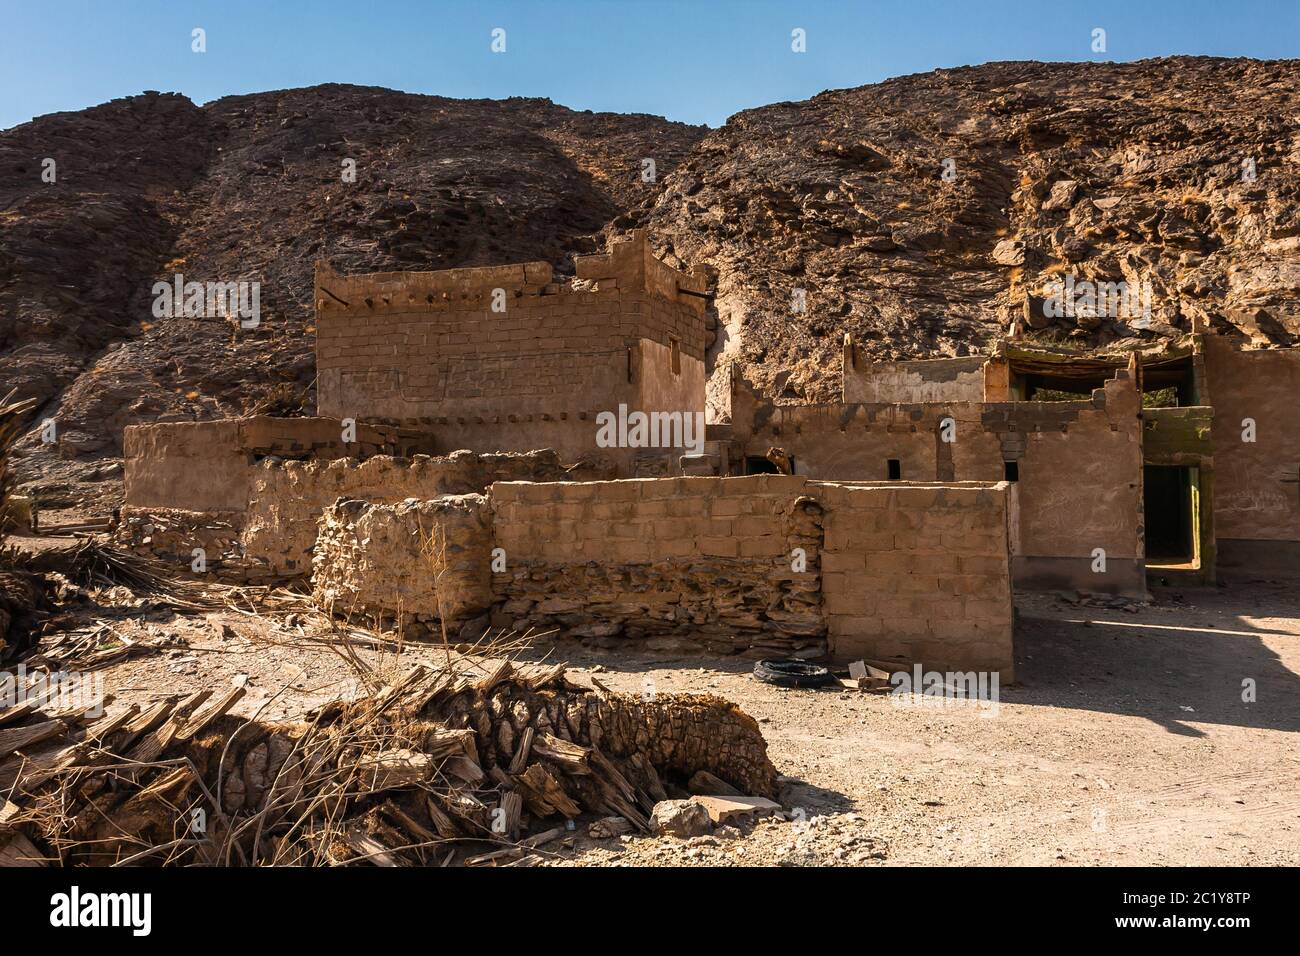 An abandoned village in Wadi Massal, Riyadh Province, Saudi Arabia Stock Photo